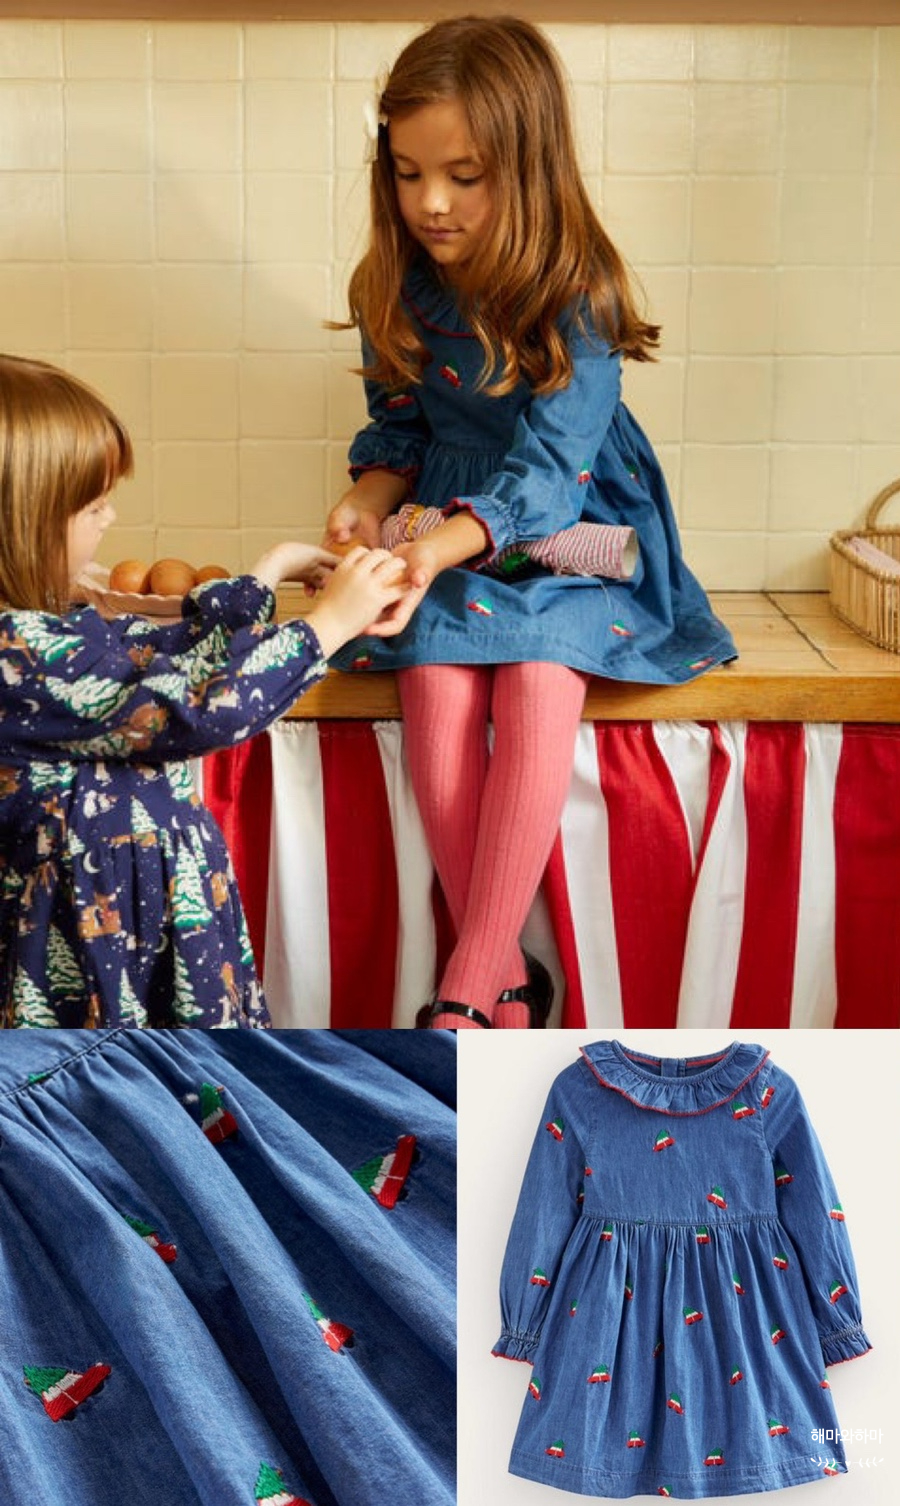 영국 보덴 스웨터 드레스 60% 세일 + 키즈옷 브랜드 추천